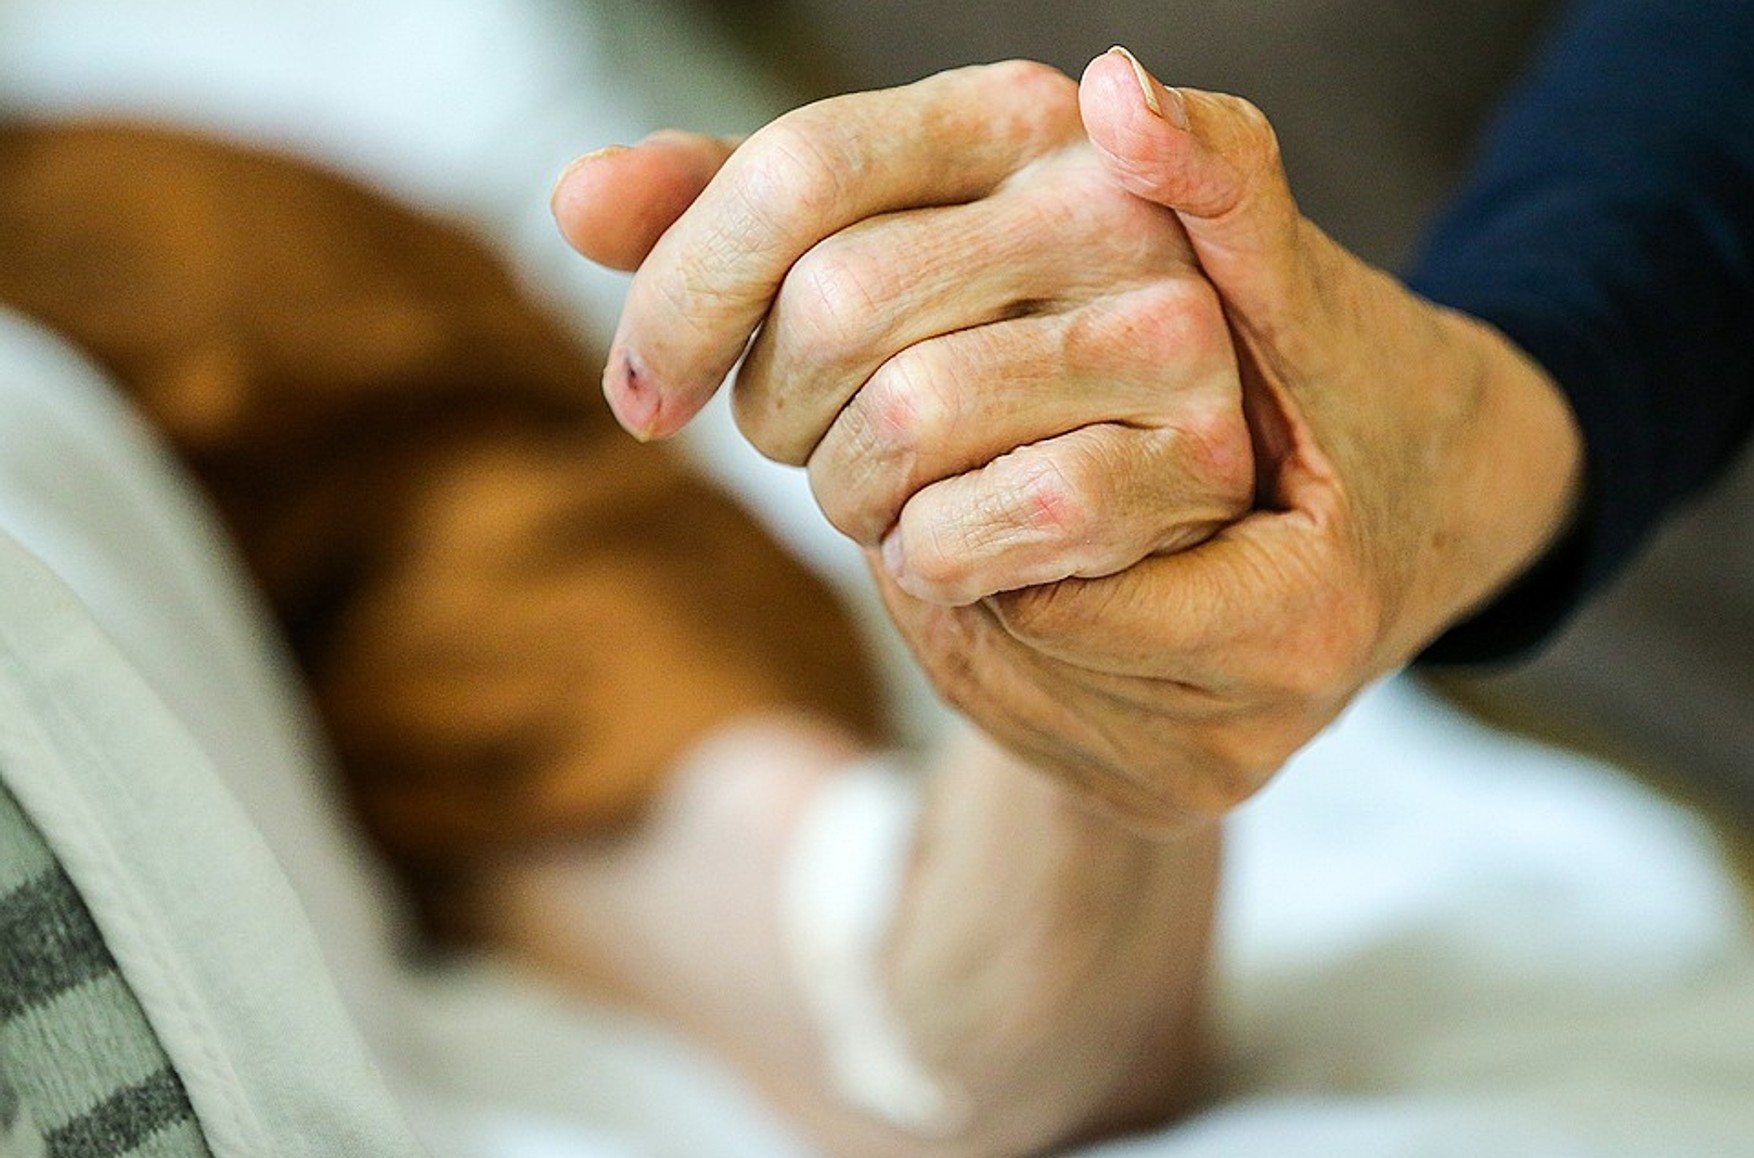 Австрійський уряд схвалив законопроект, що дозволяє непряму евтаназію для тяжкохворих пацієнтів